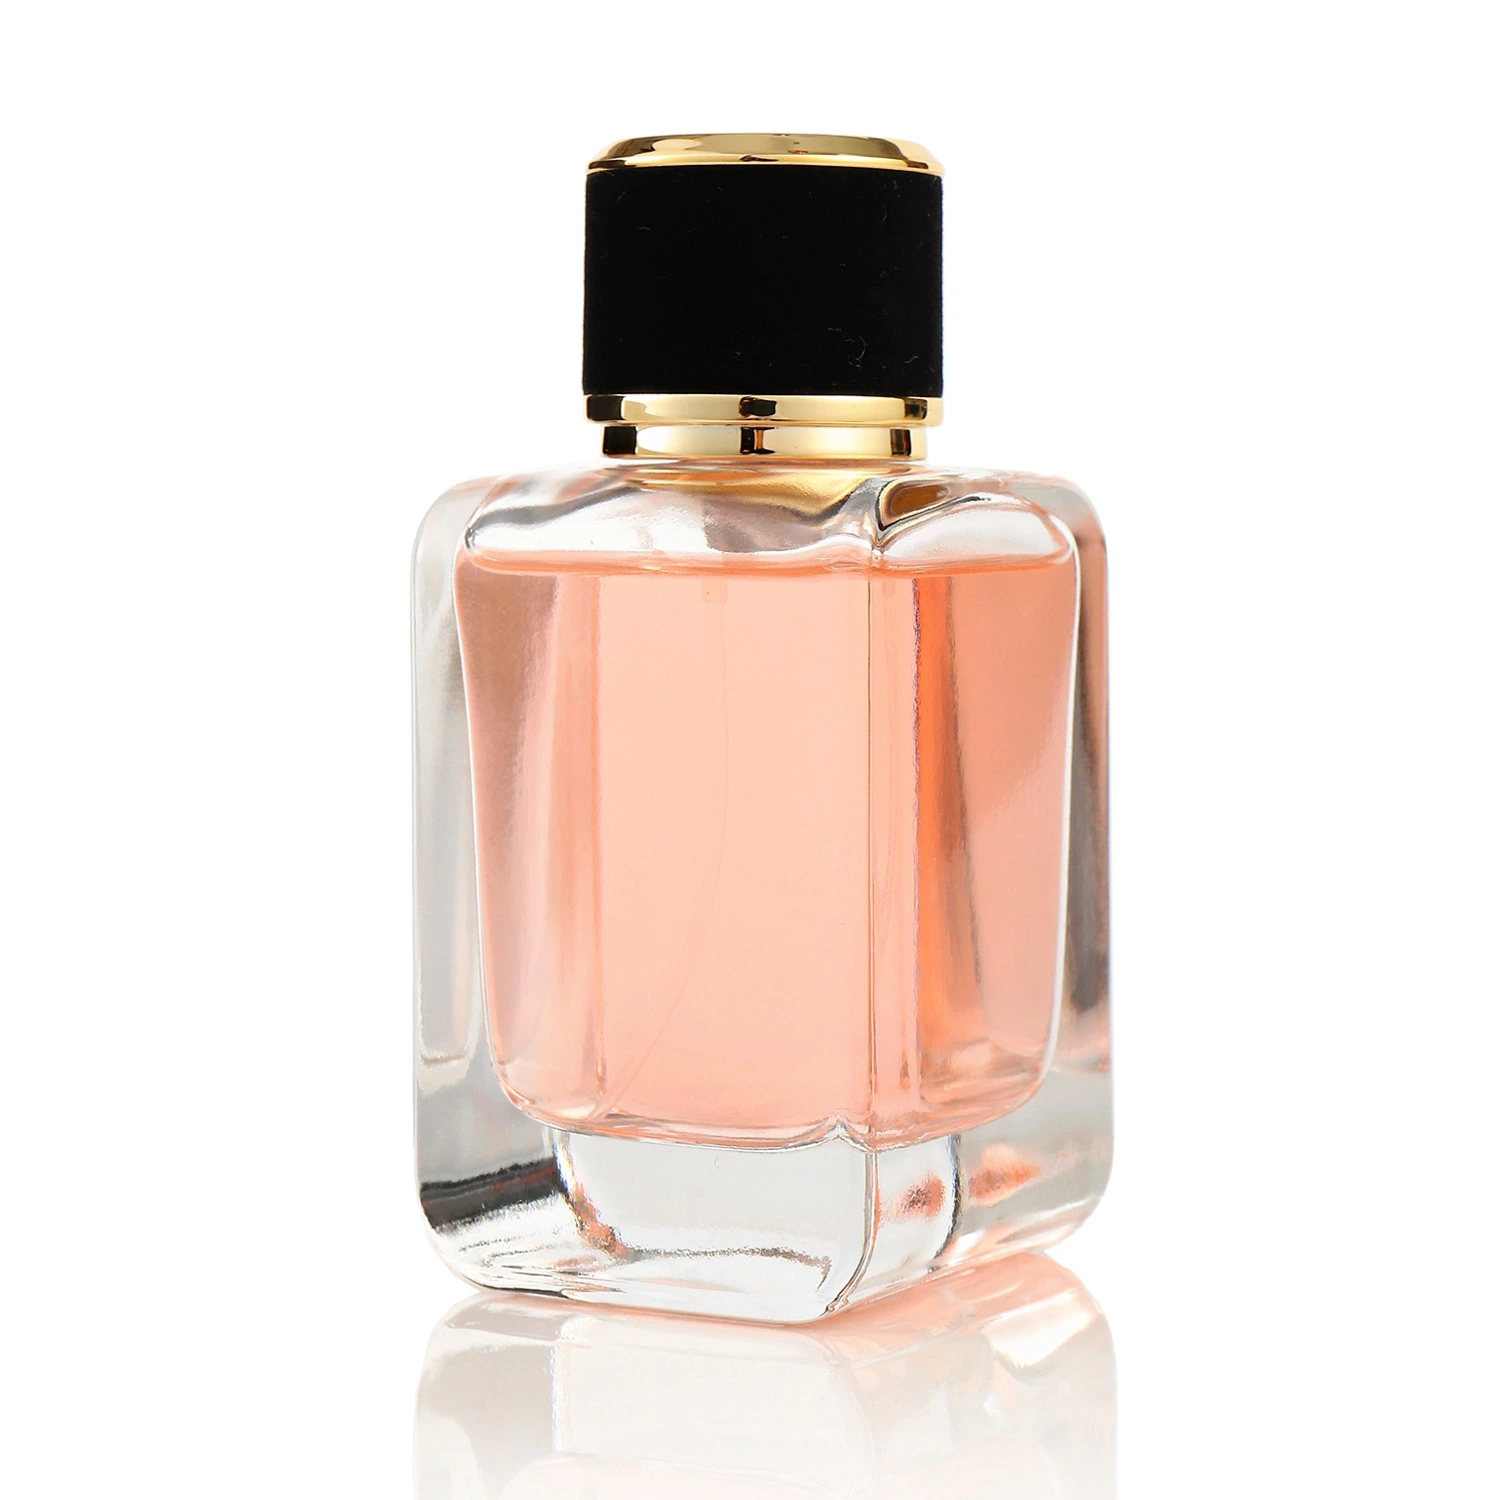 New Design Brand Perfume Bottles 50ml Empty Spray Bottle Crystal Perfume Bottle